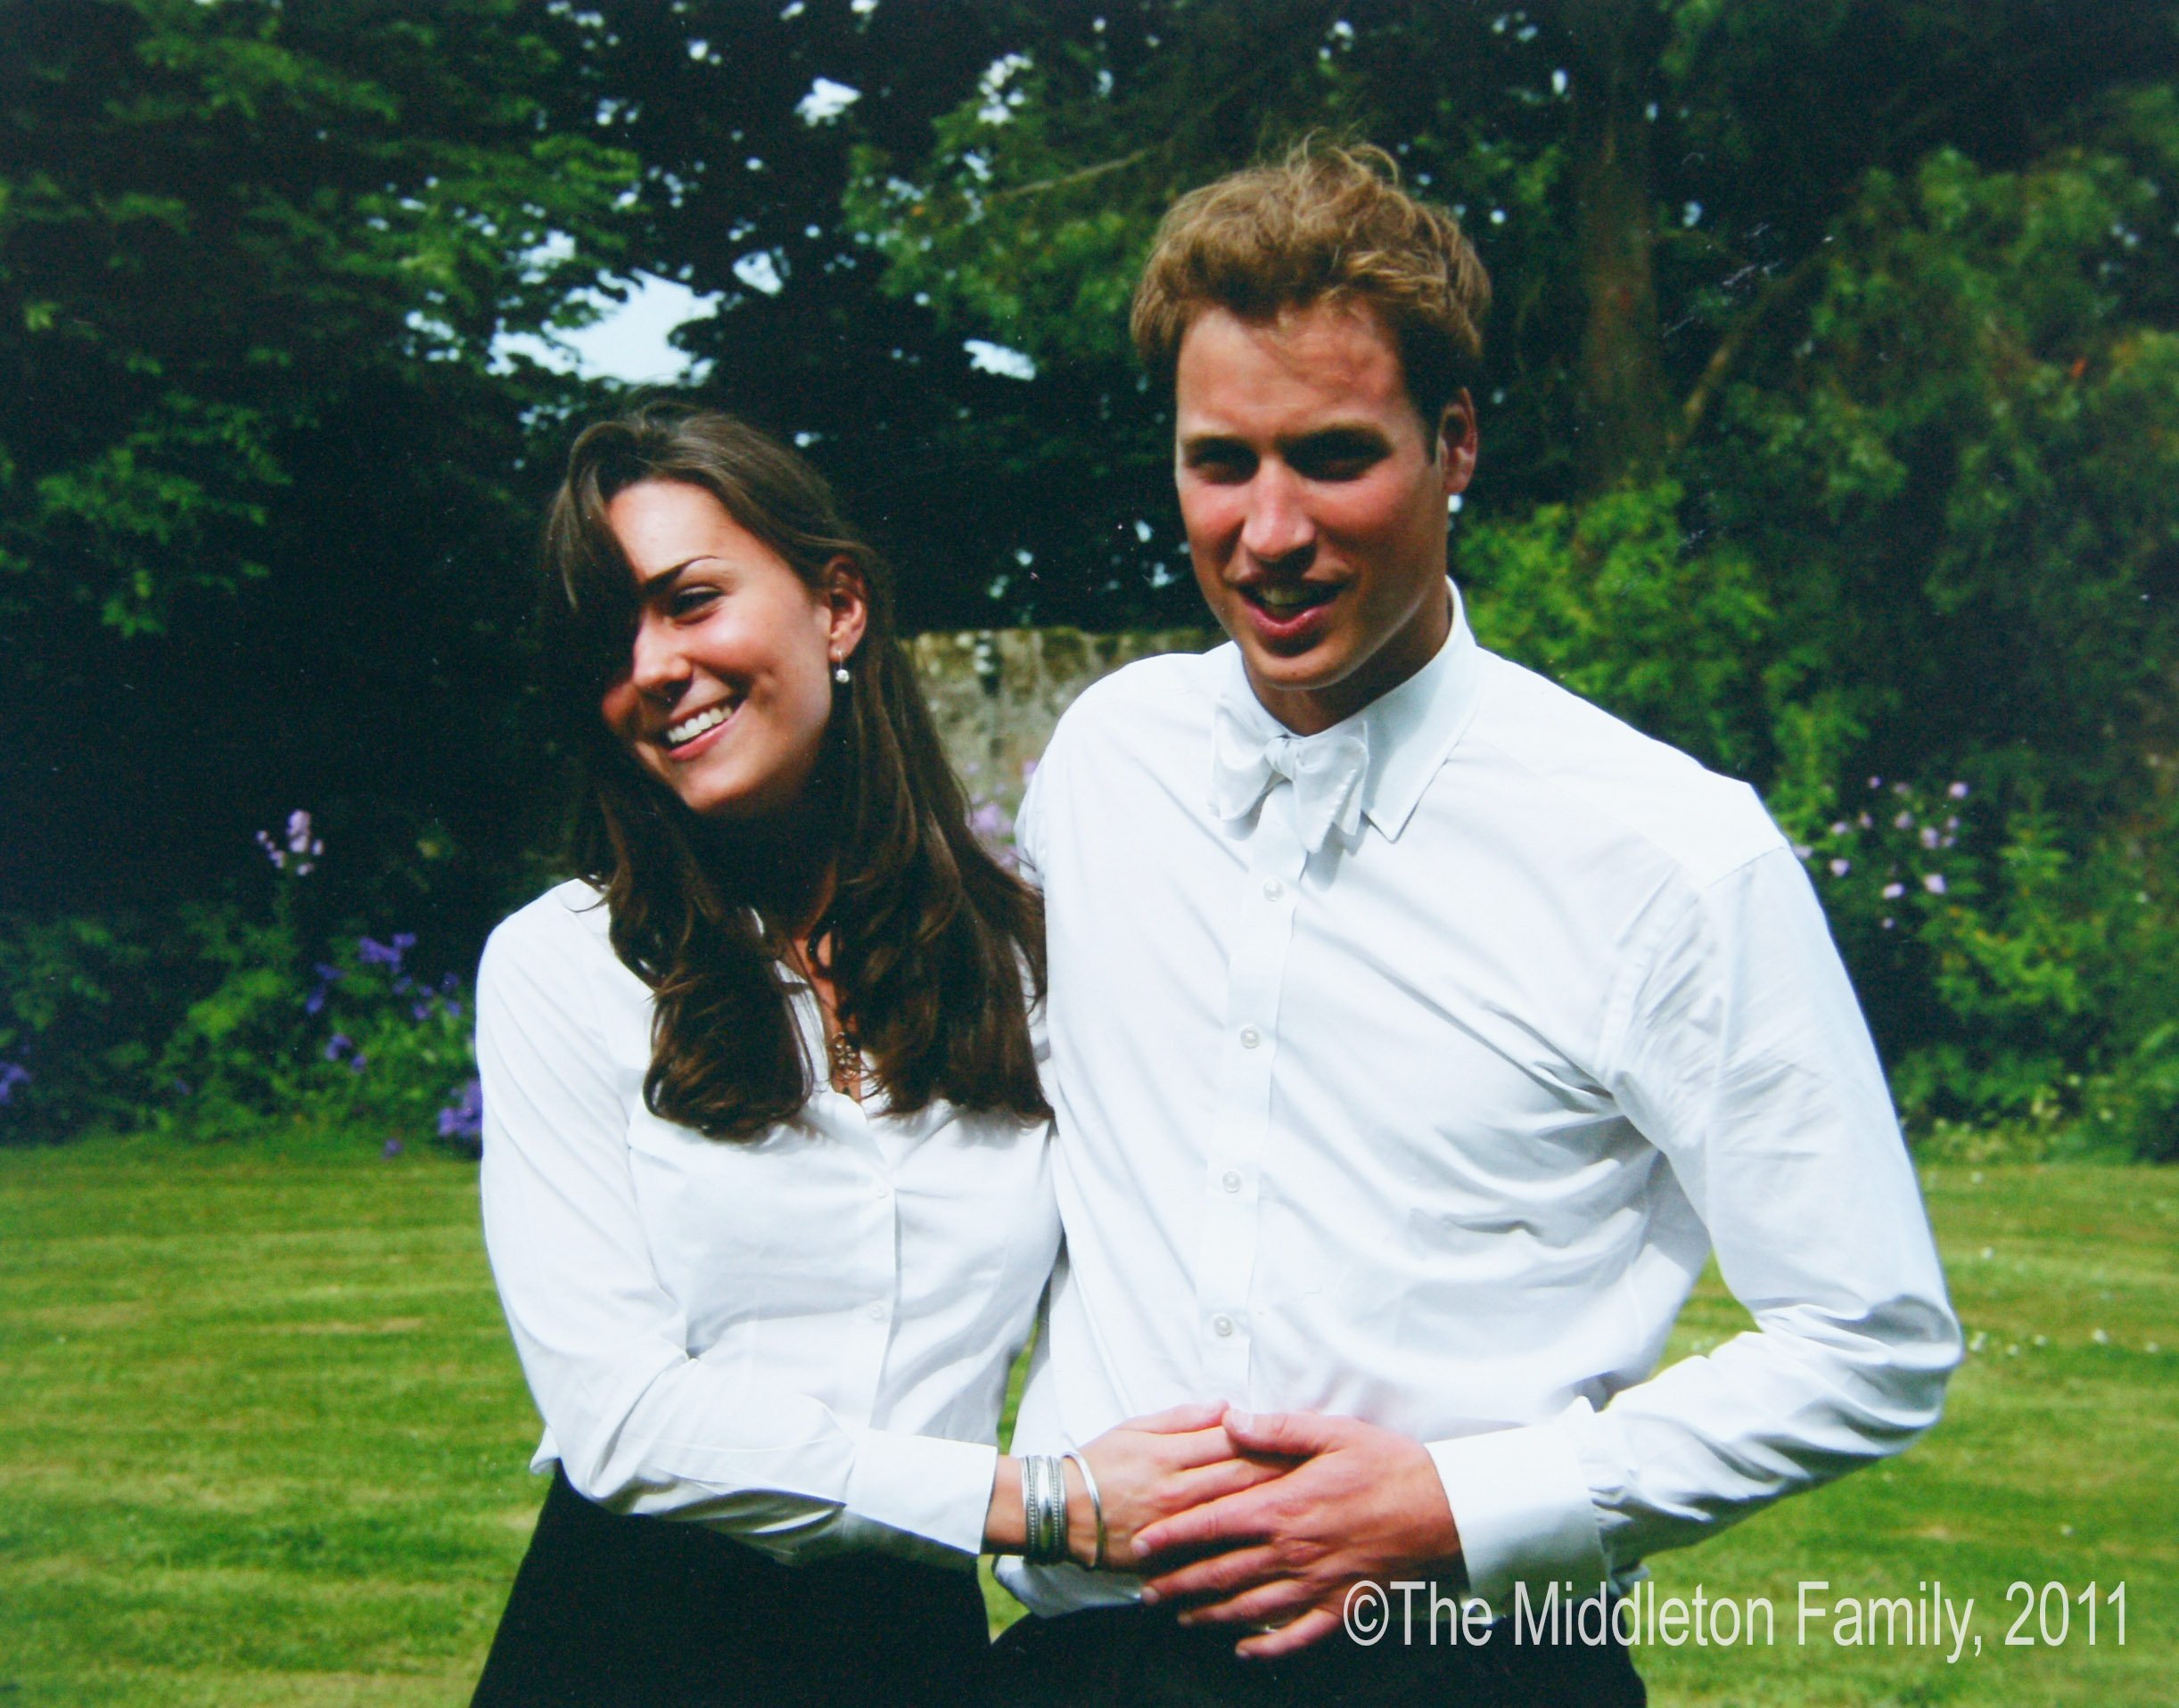 Le prince William et Kate Middleton le jour de leur remise de diplôme à l'université St. Andrew's, le 23 juin 2005 en Écosse. | Source : Getty Images